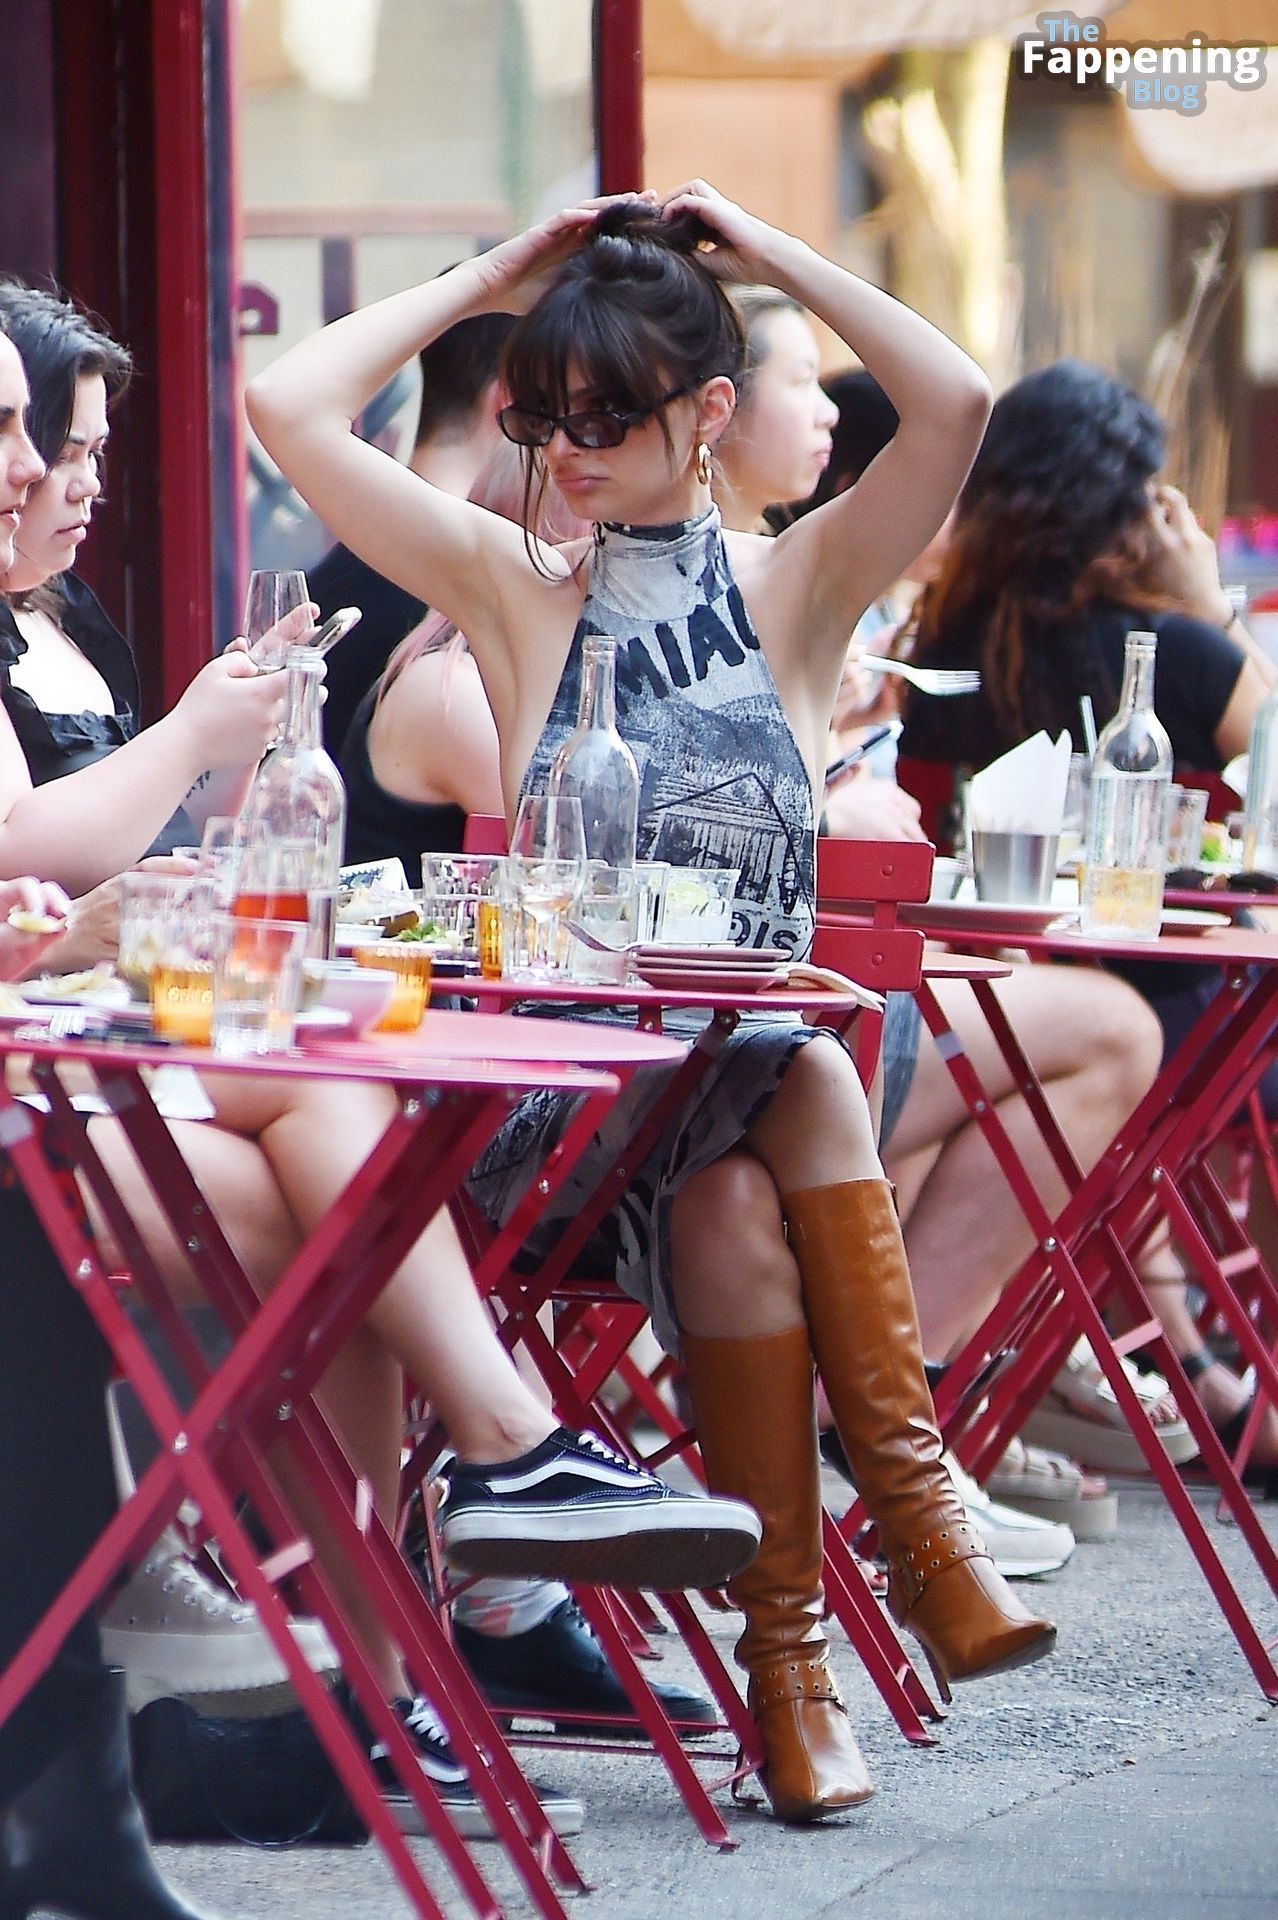 Emily Ratajkowski Dispays Her Sexy Boobs as She Enjoys Dinner with Friends (61 Photos)